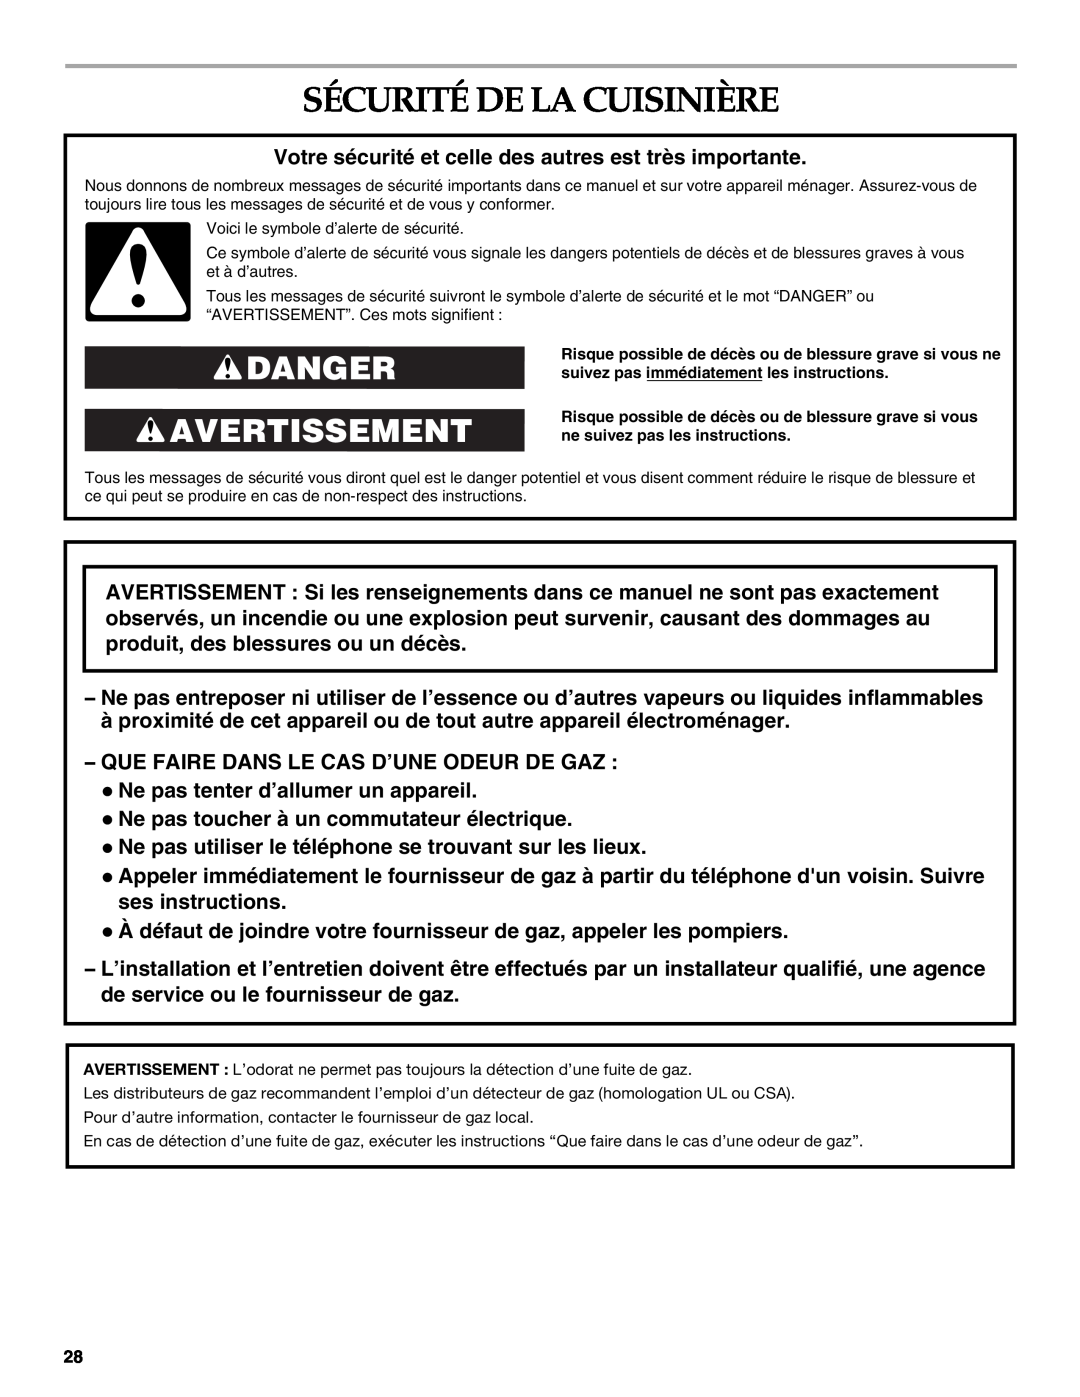 KitchenAid KGSK901, KGSS907, KGRS807 manual Sécurité De La Cuisinière, Danger Avertissement 